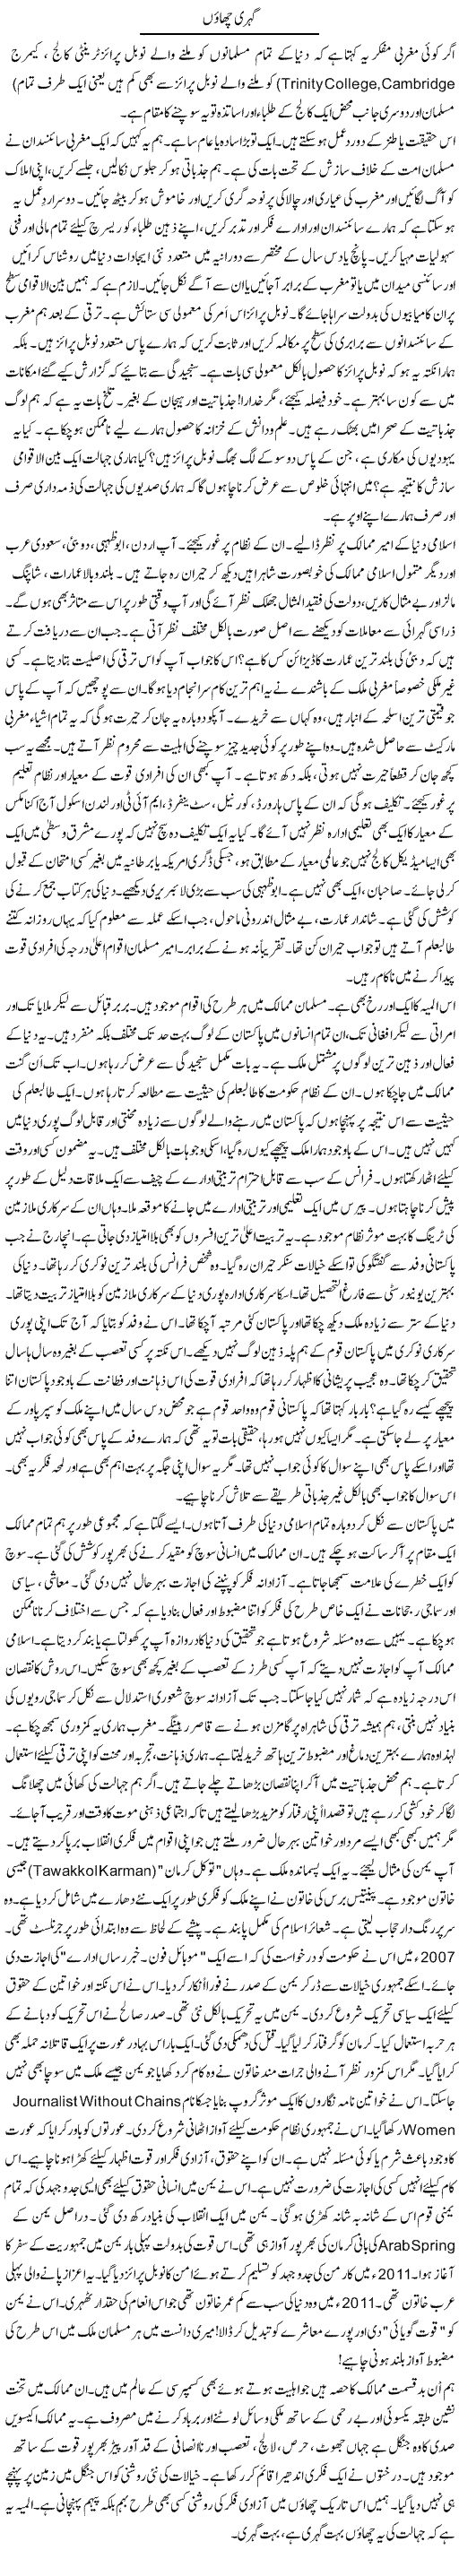 Gehri Chaon | Rao Manzar Hayat | Daily Urdu Columns